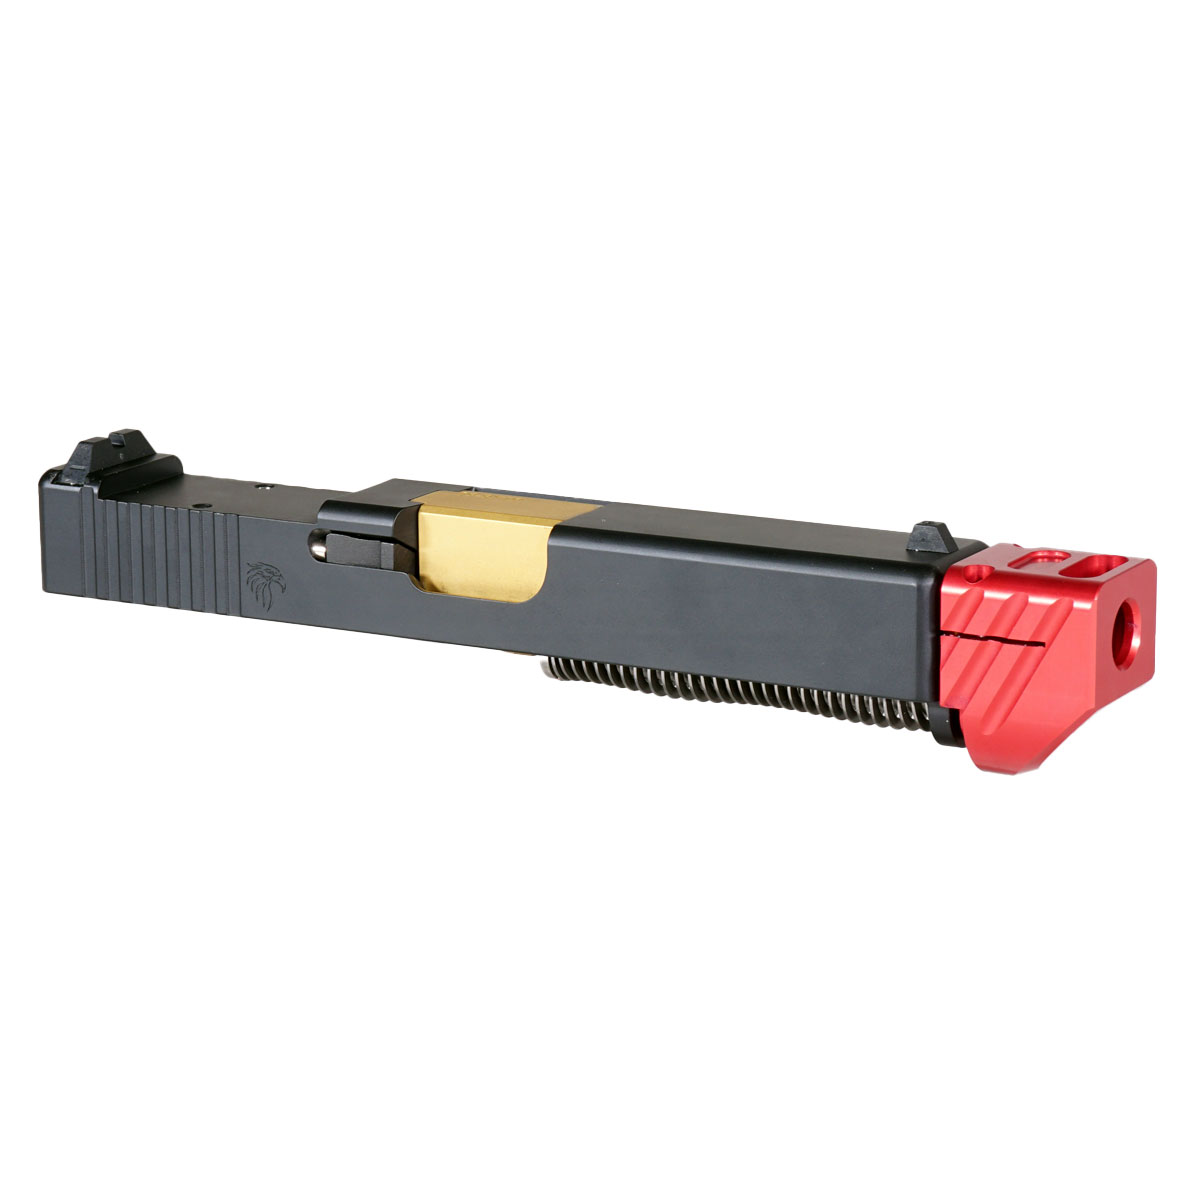 MMC 'Skyflash V3 w/ Red Compensator' 9mm Complete Slide Kit - Glock 19 Gen 1-3 Compatible